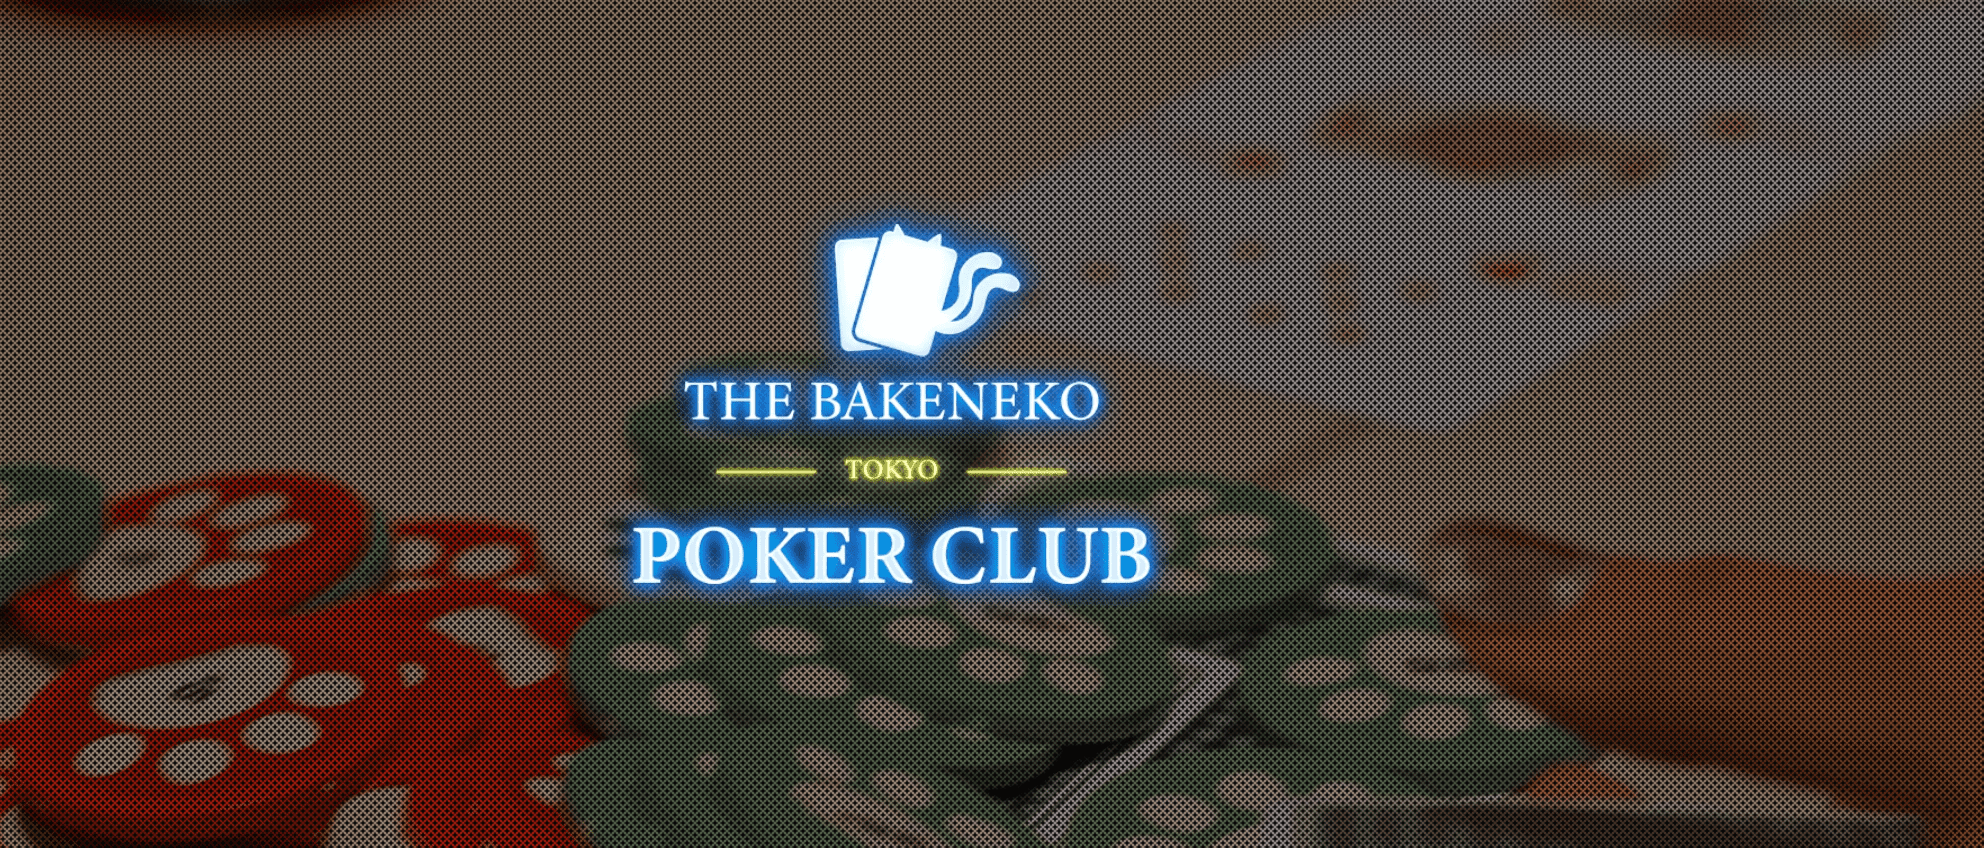 化け猫ポーカー倶楽部のホームページ